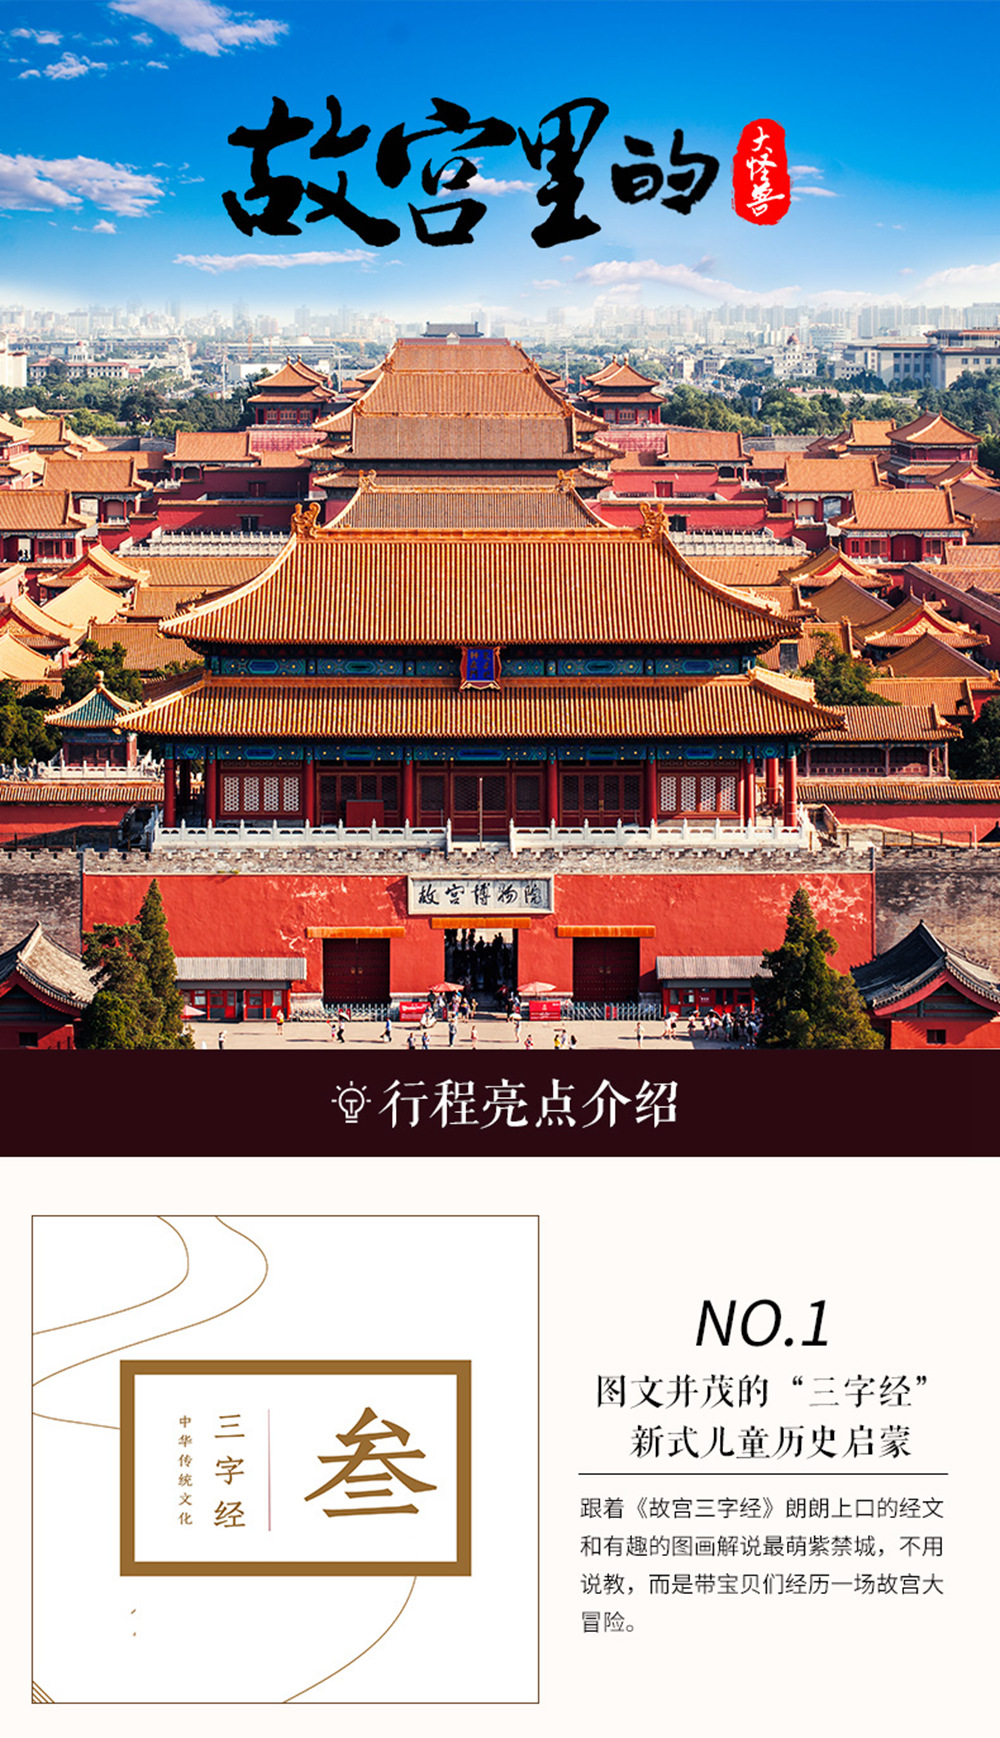 北京故宫博物馆半日游·含故宫门票 2小时讲解·可选上午场/下午场